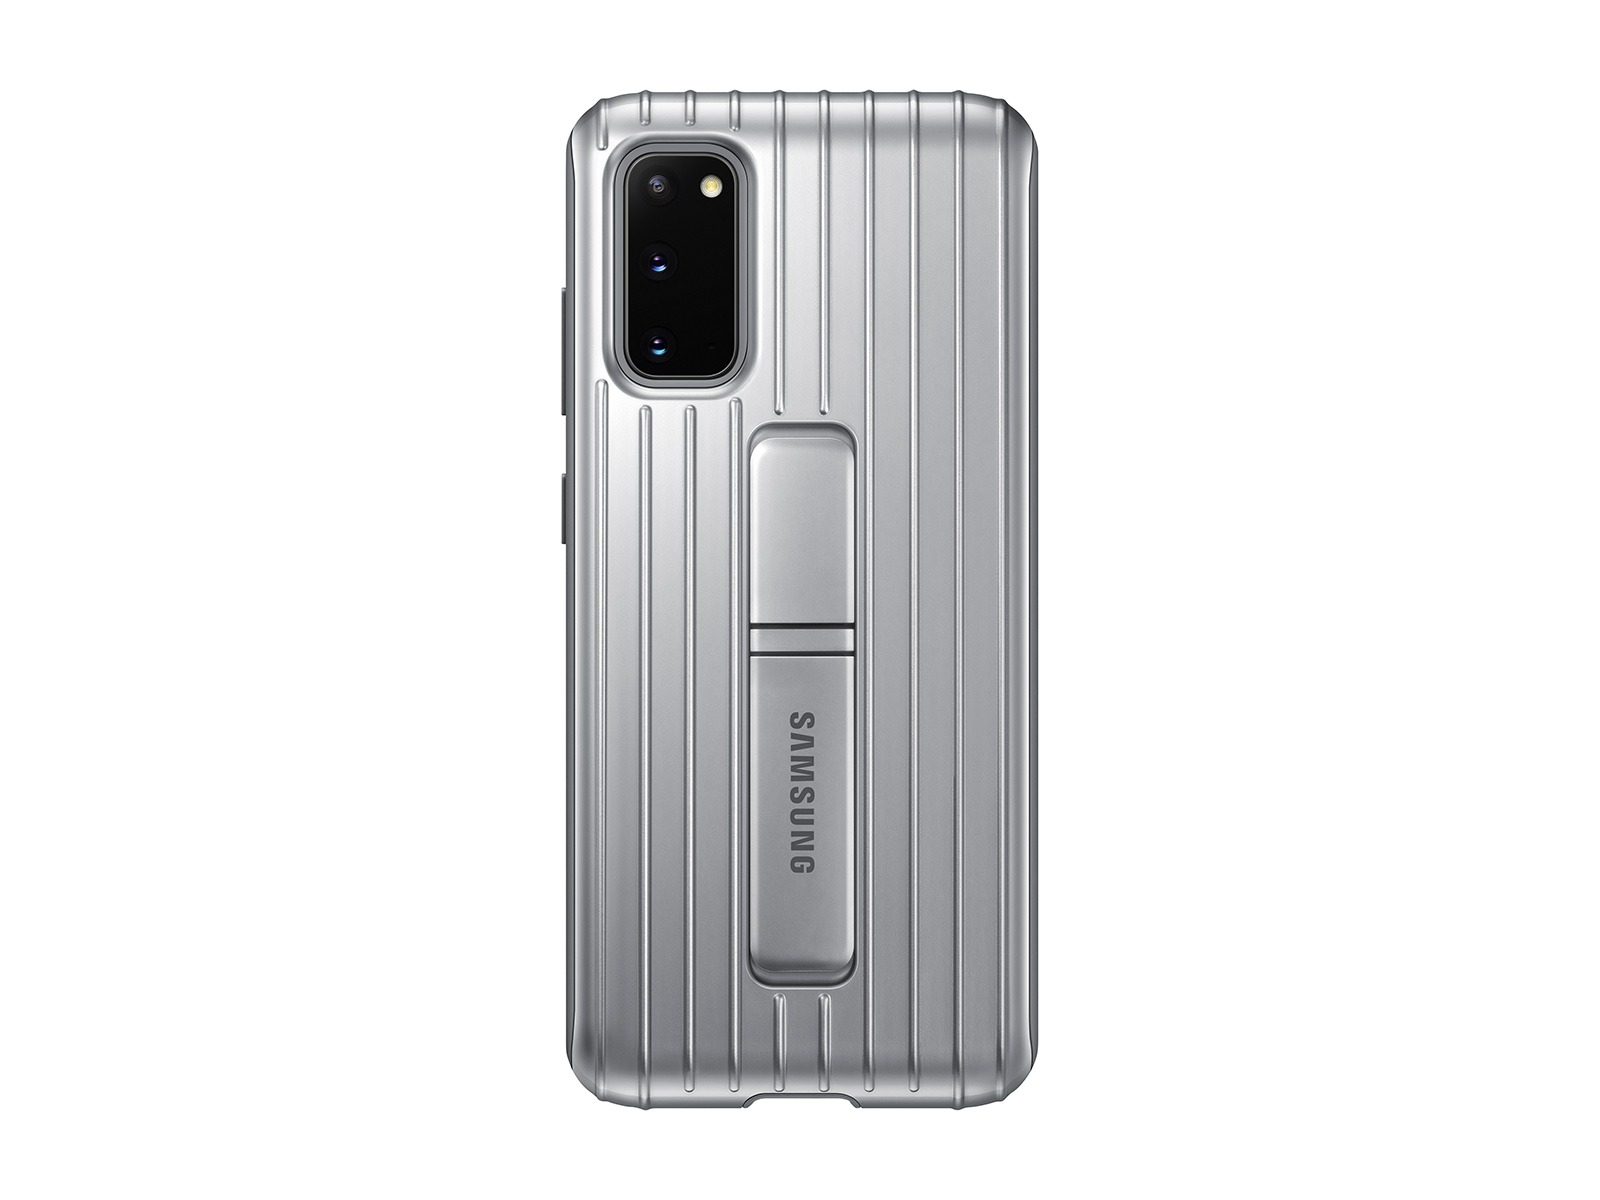 Funda Led View Cover Original Samsung Para Samsung Galaxy S20 Plus